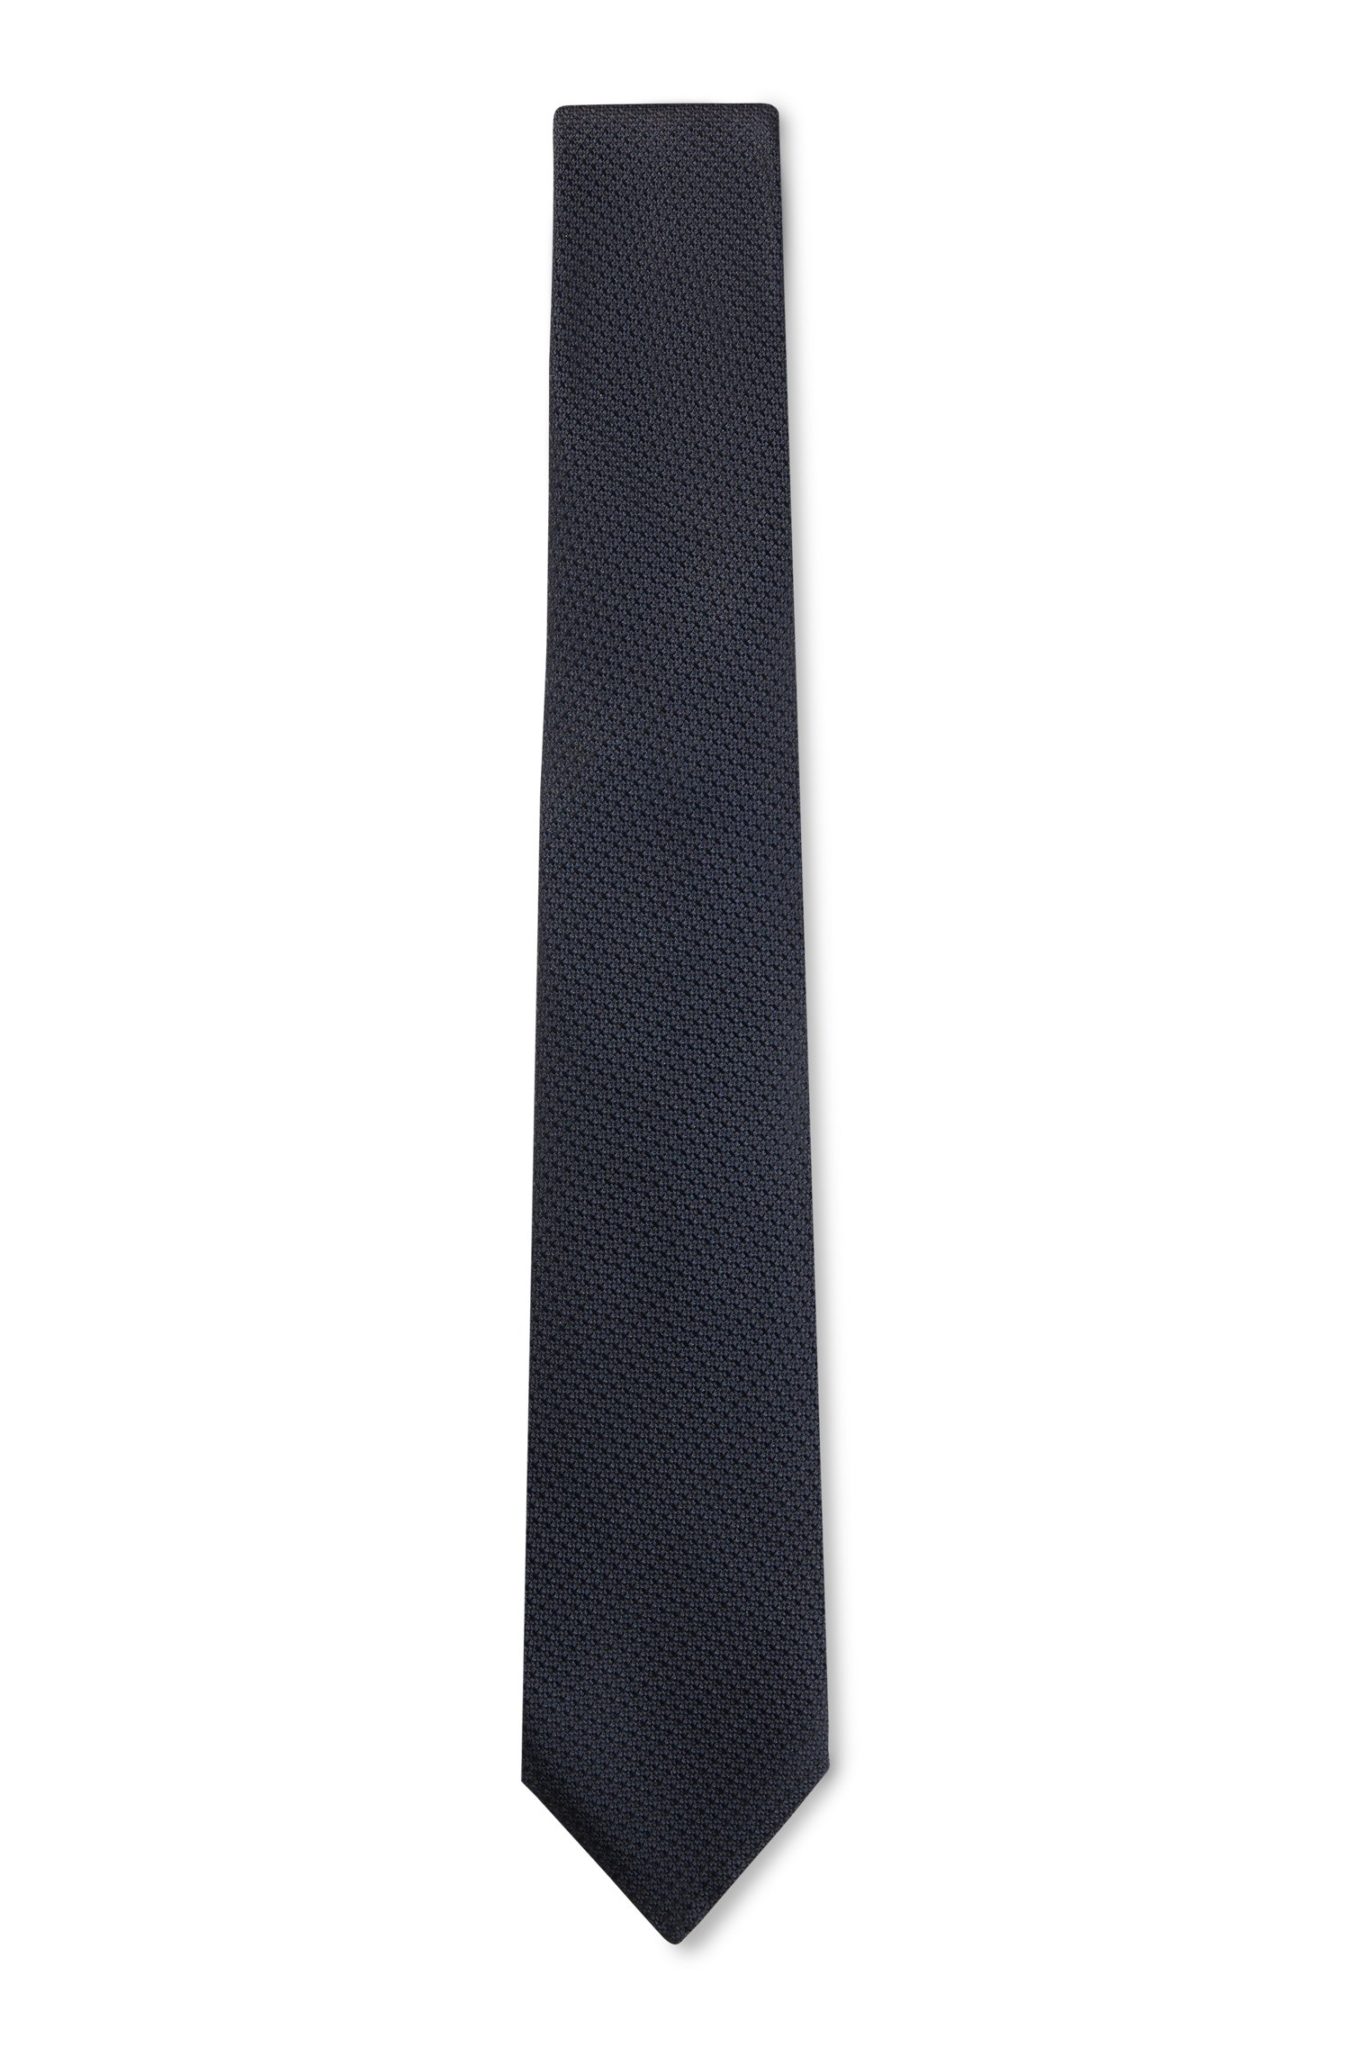 Hugo Boss Cravate en soie avec structure jacquard